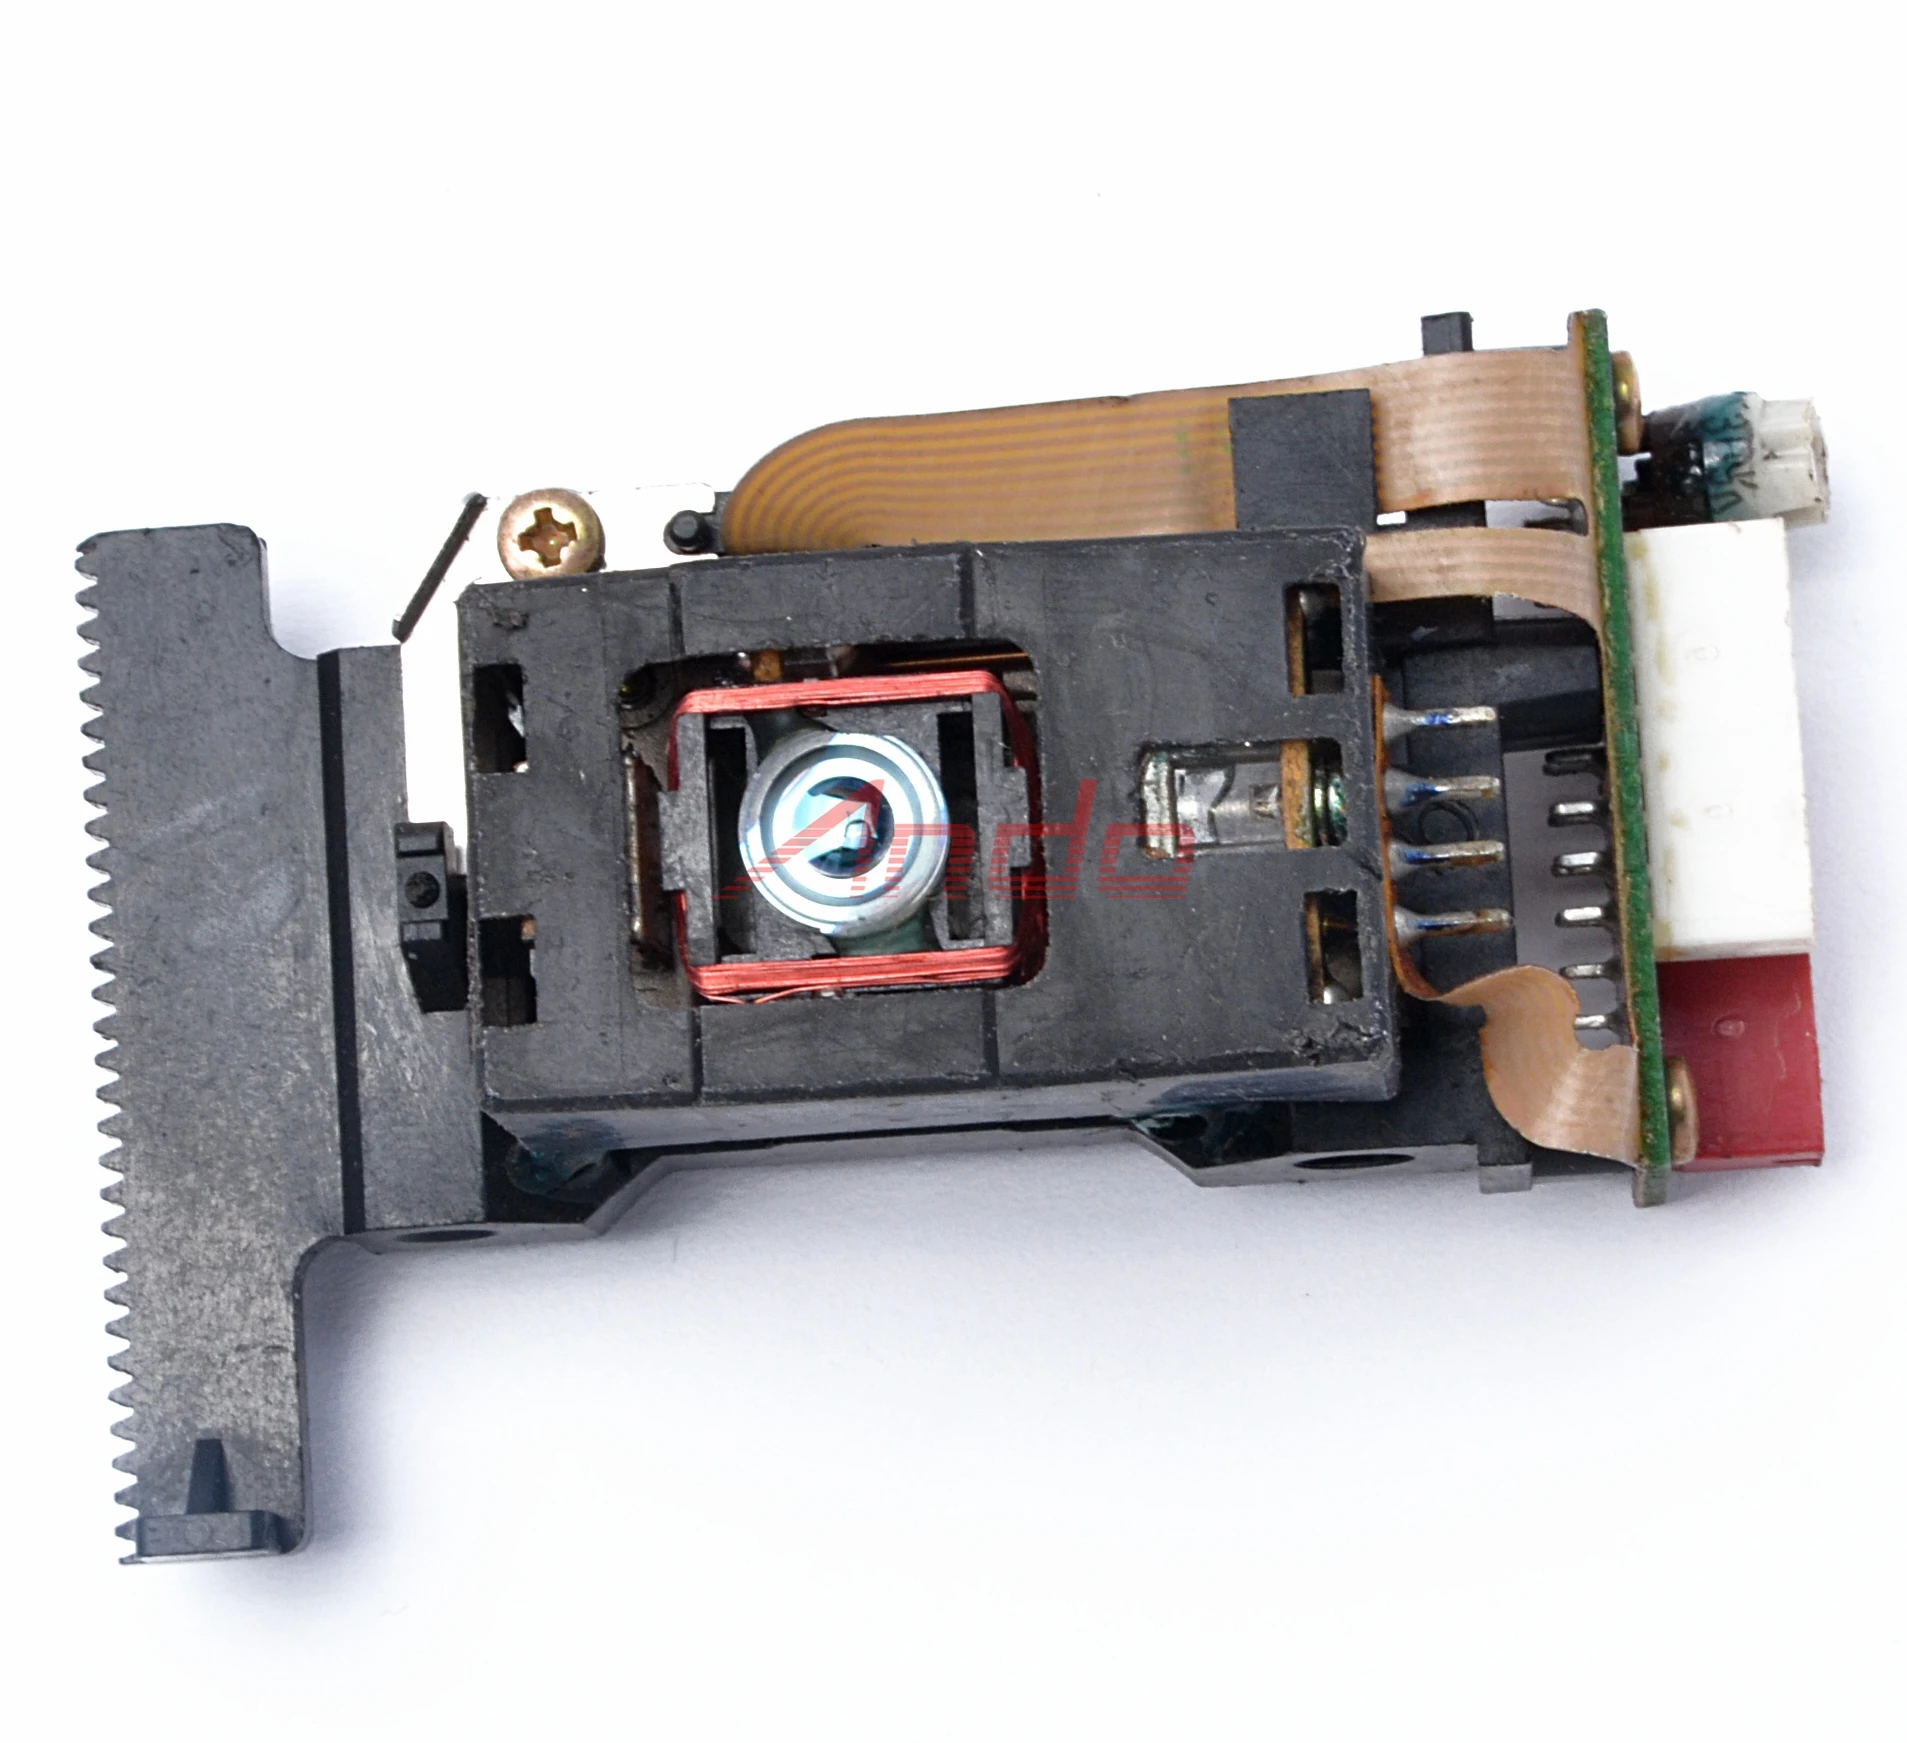 Запчасти для ремонта Линн карик радио CD проигрыватель лазерная головка Оптический Пикап блок оптики